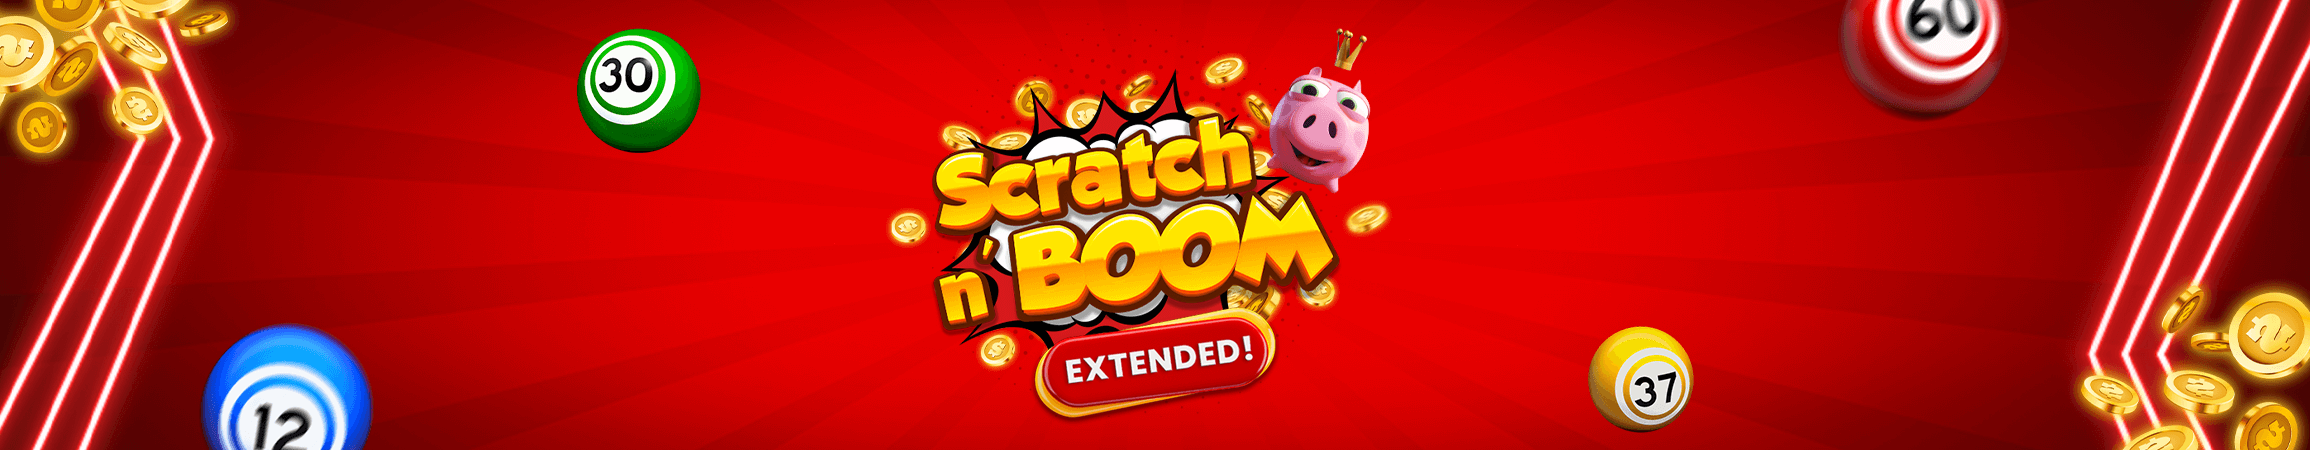 ¡Los rascas de la suerte de FBM® continúan este octubre con una extensión Scratch and Boom!